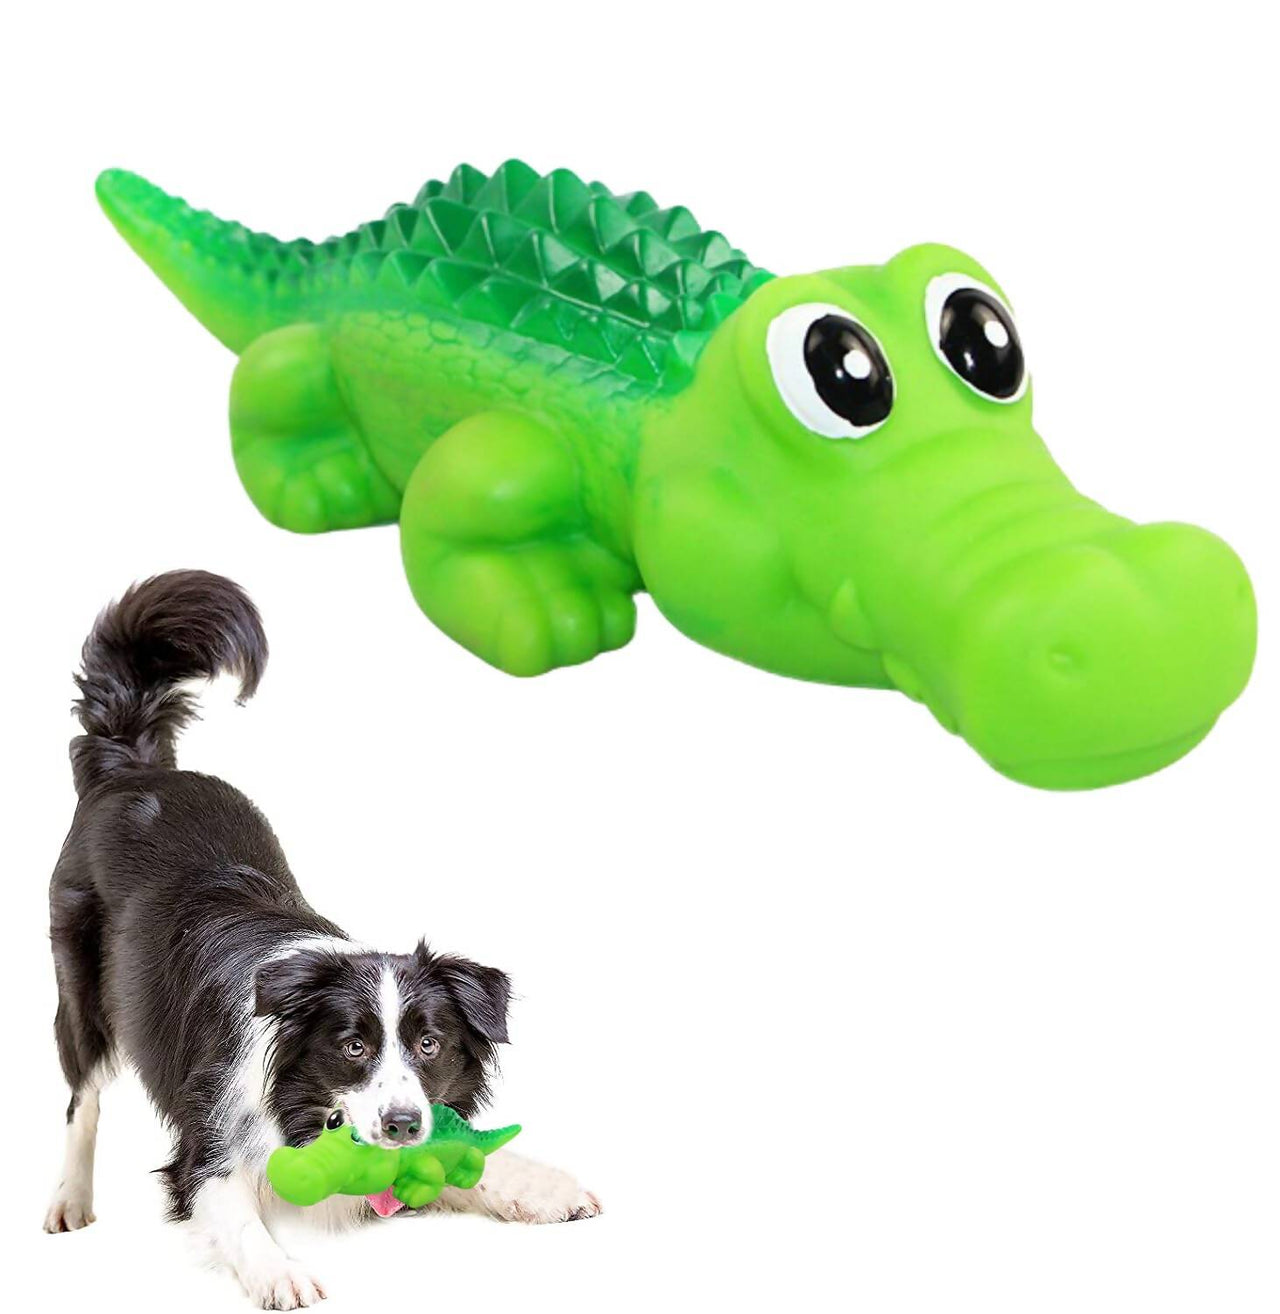 Sage Square Durable Interactive Dog Squeaky Crocodile Toy (Random Color) - Distacart